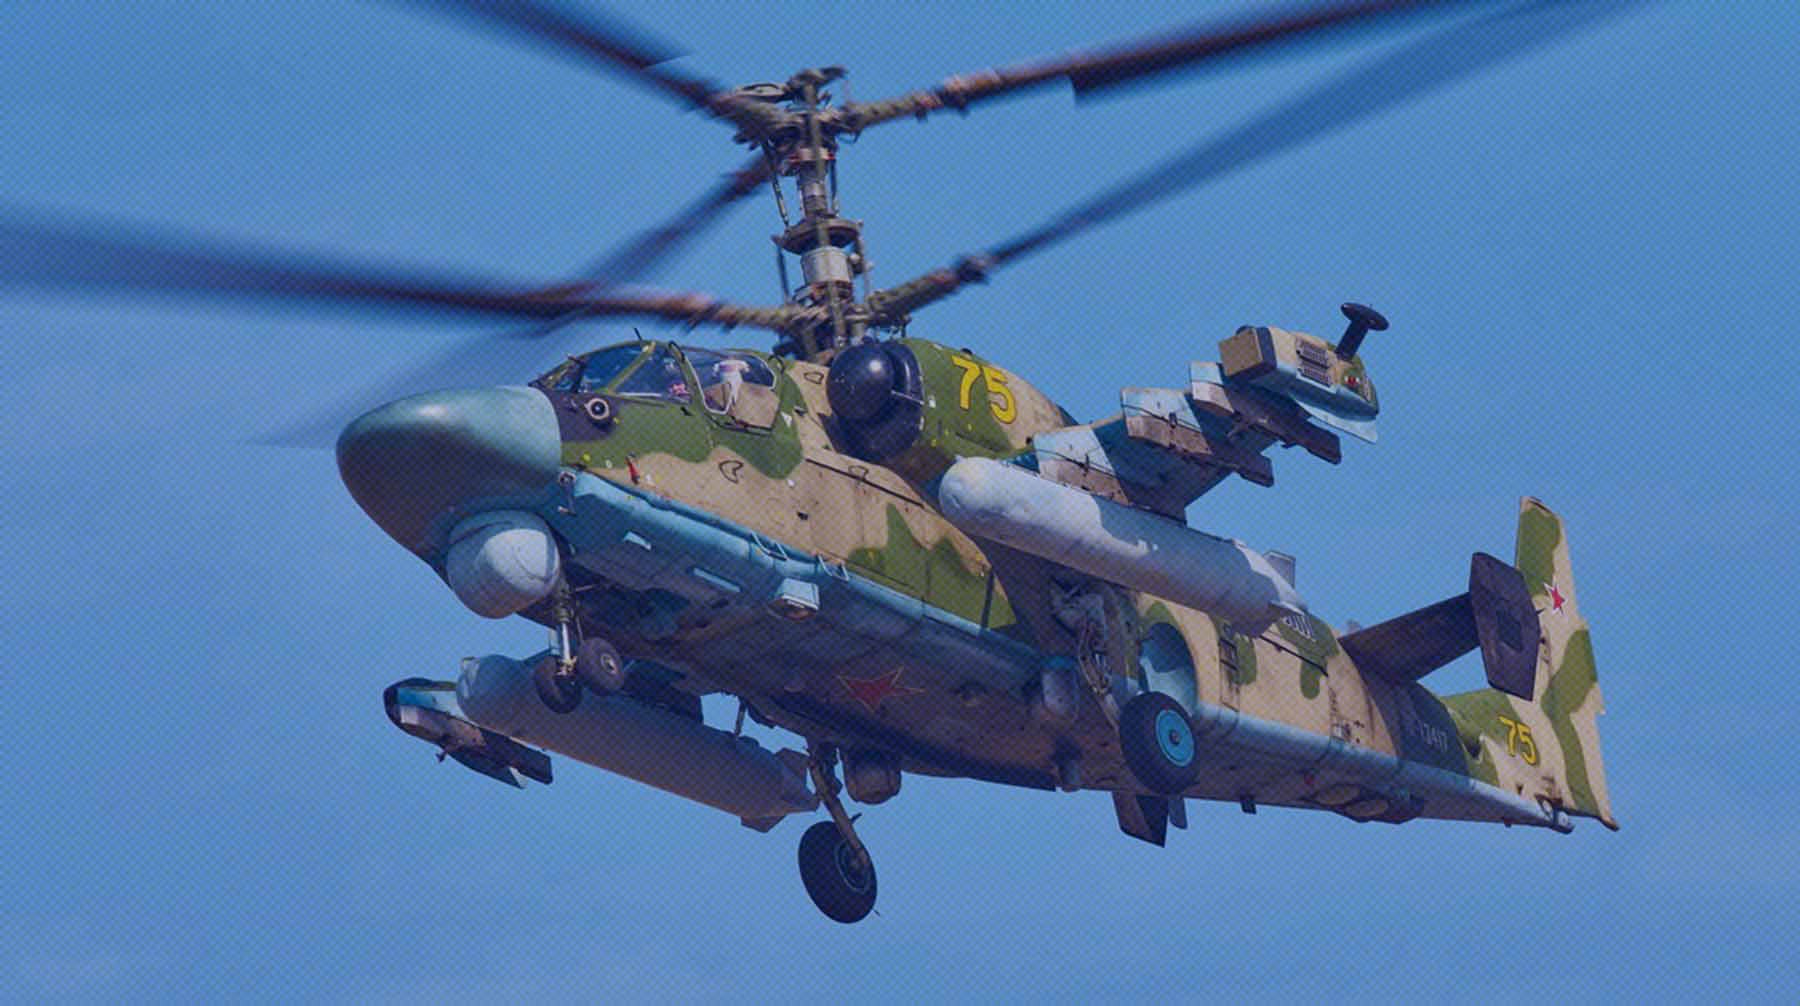 Dailystorm - Минобороны показало видео из кабины ударного вертолета Ка-52, экипаж которого сражается на Украине